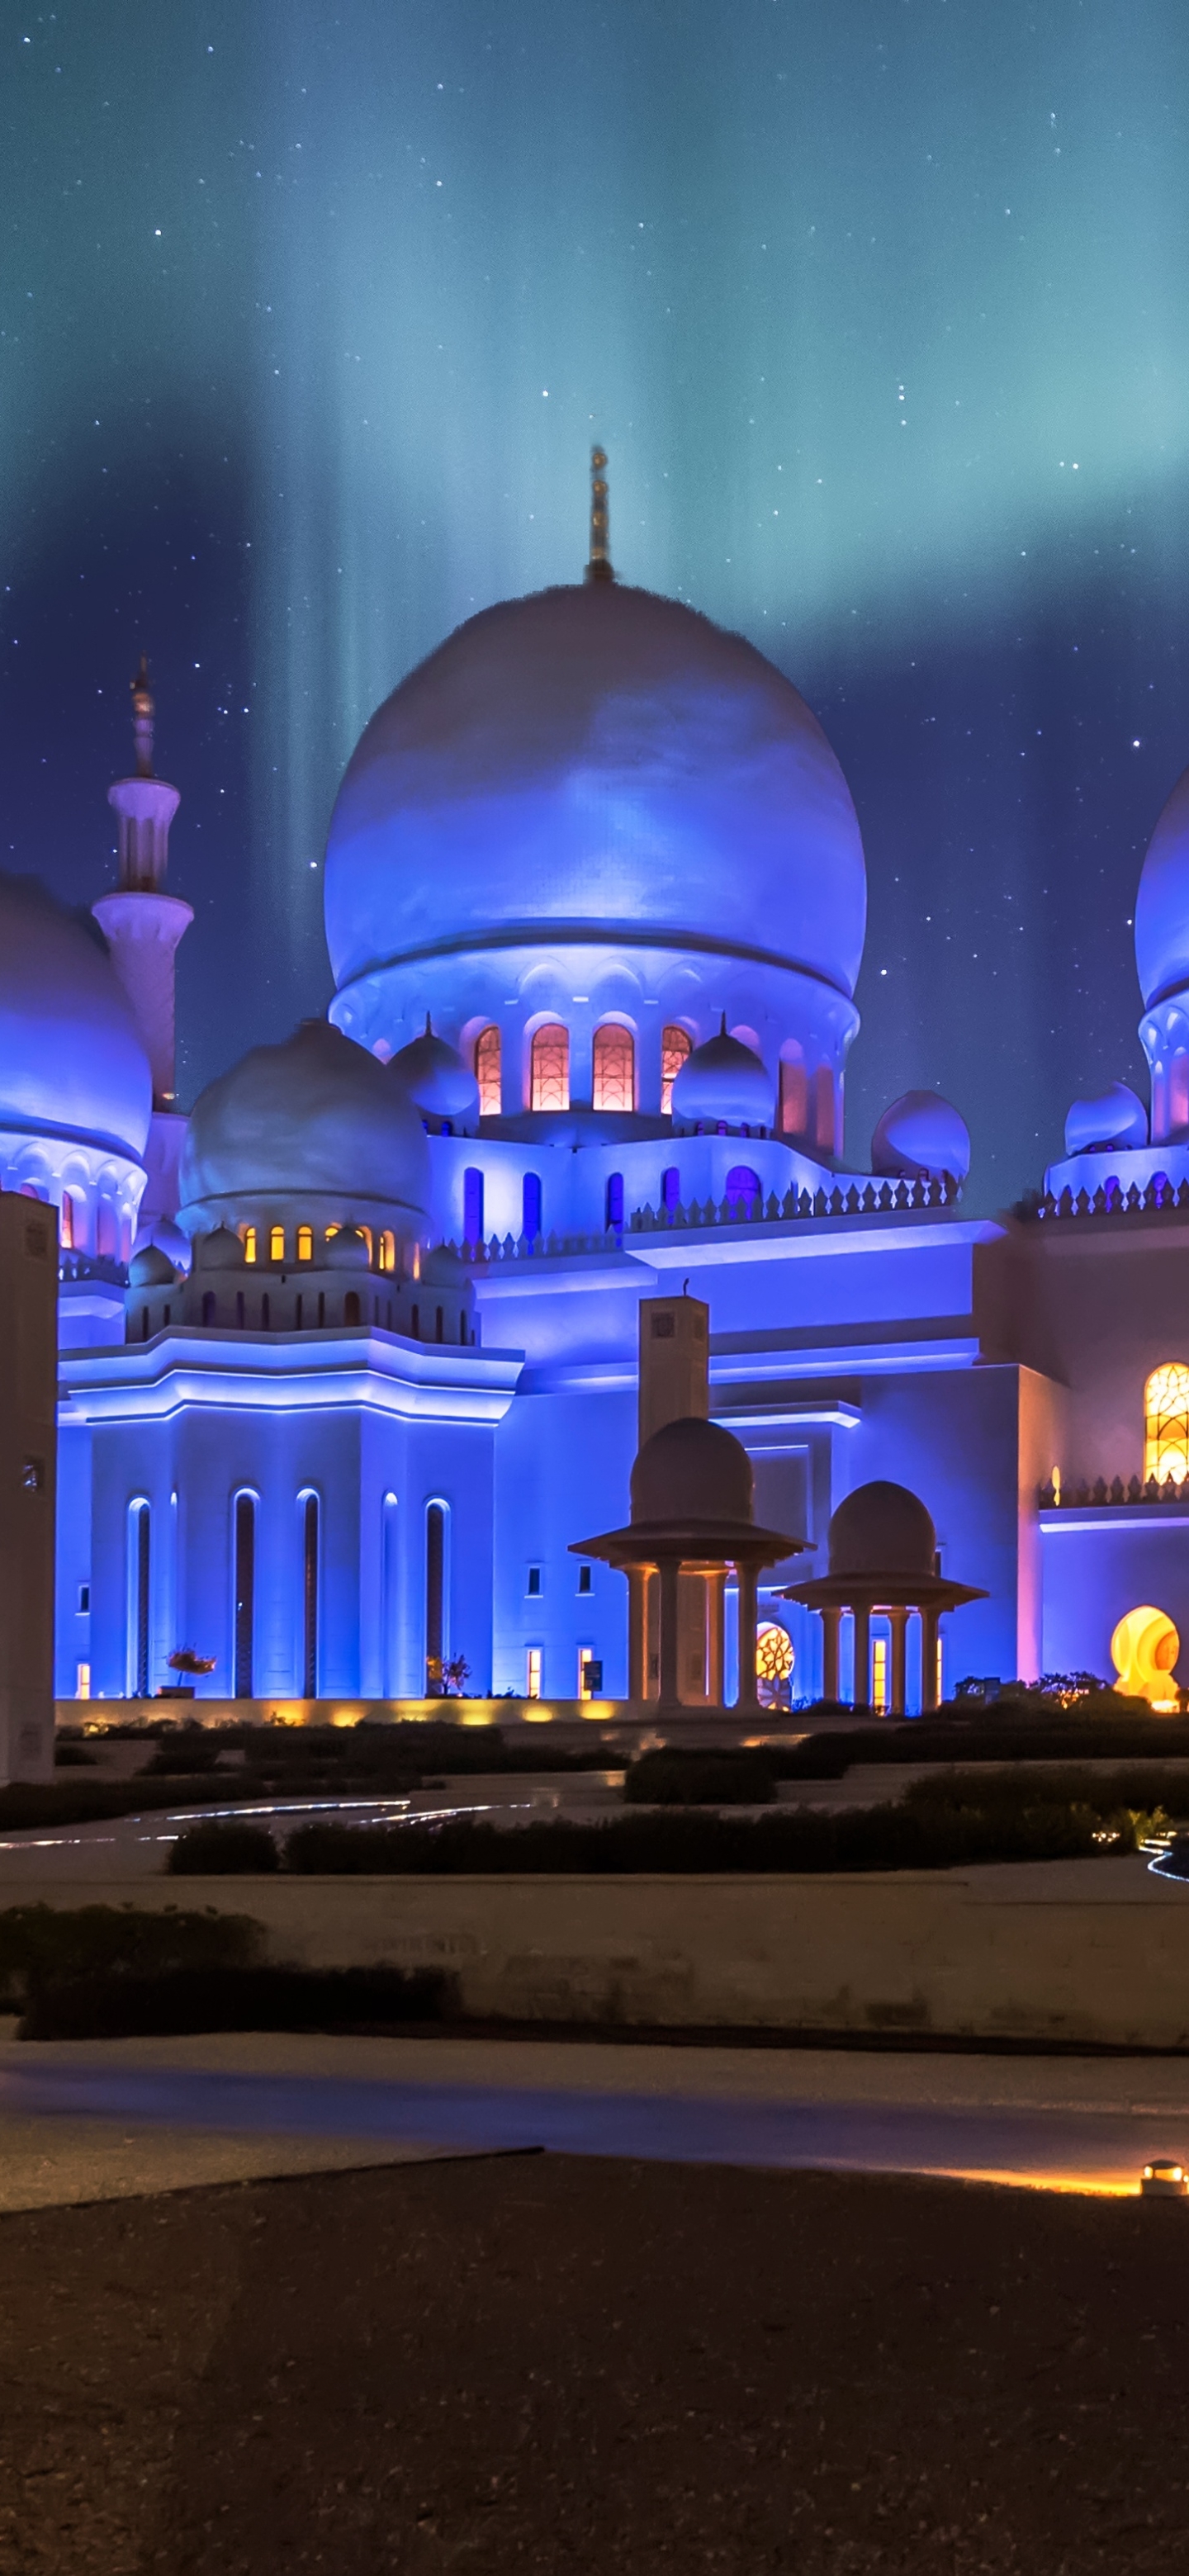 Descarga gratuita de fondo de pantalla para móvil de Noche, Arquitectura, Hazme, Emiratos Árabes Unidos, Abu Dhabi, Mezquita, Religioso, Gran Mezquita Sheikh Zayed, Mezquitas.